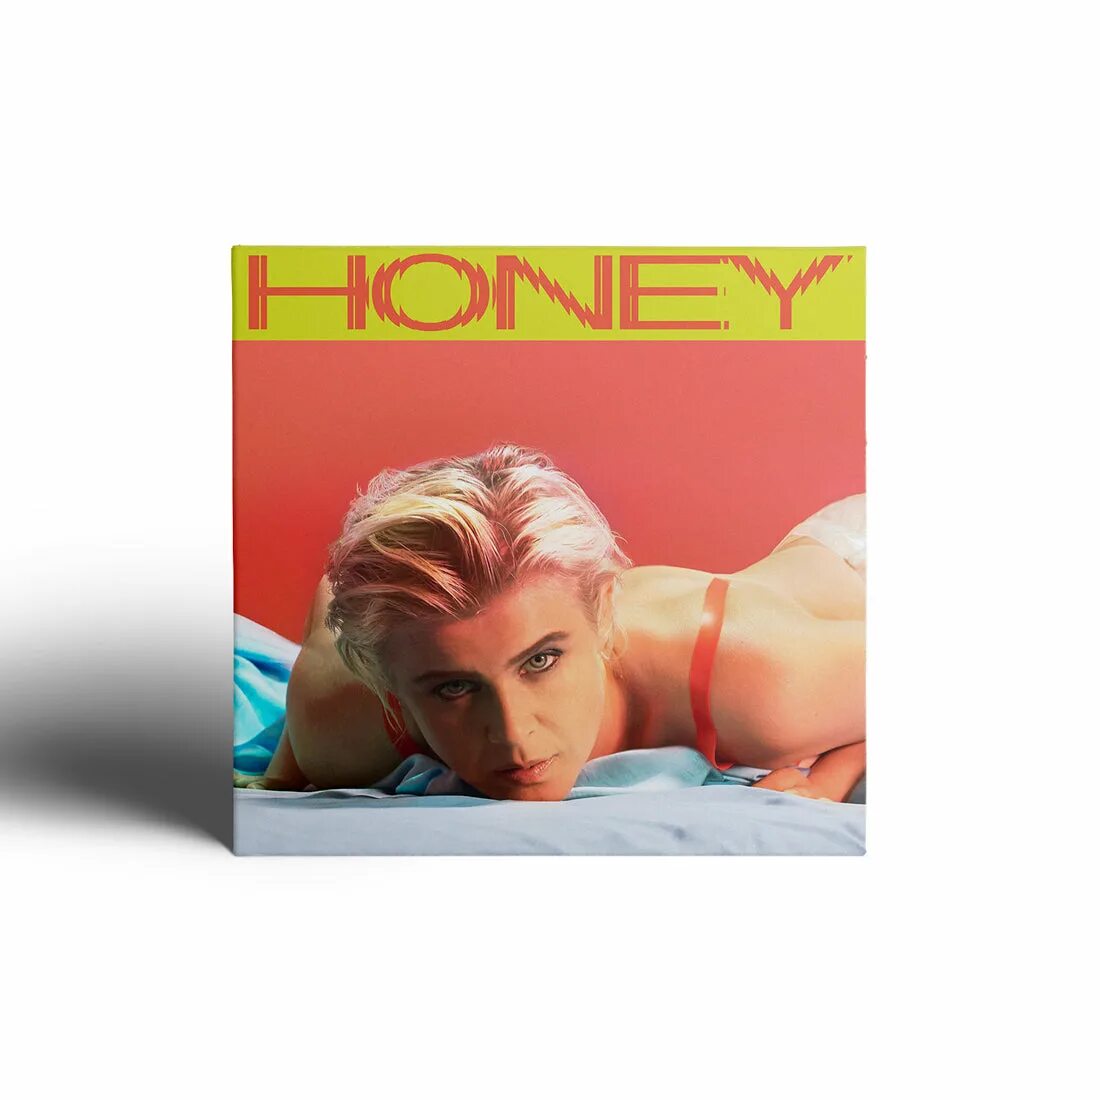 Robyn "Honey". Solar Honey обложка. Robyn Music album. Tupelo Honey обложка композитор.